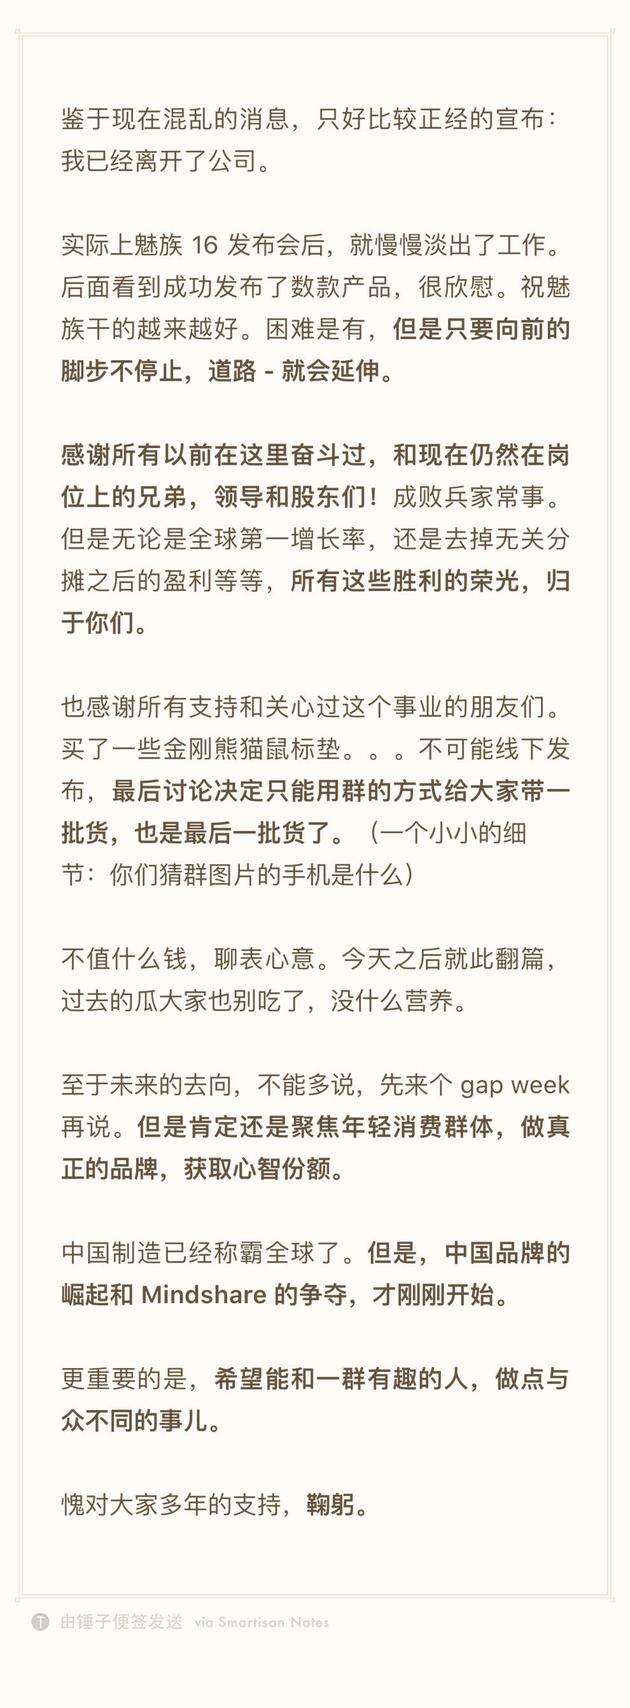 魅族科技高级副总裁李楠正式宣布离职